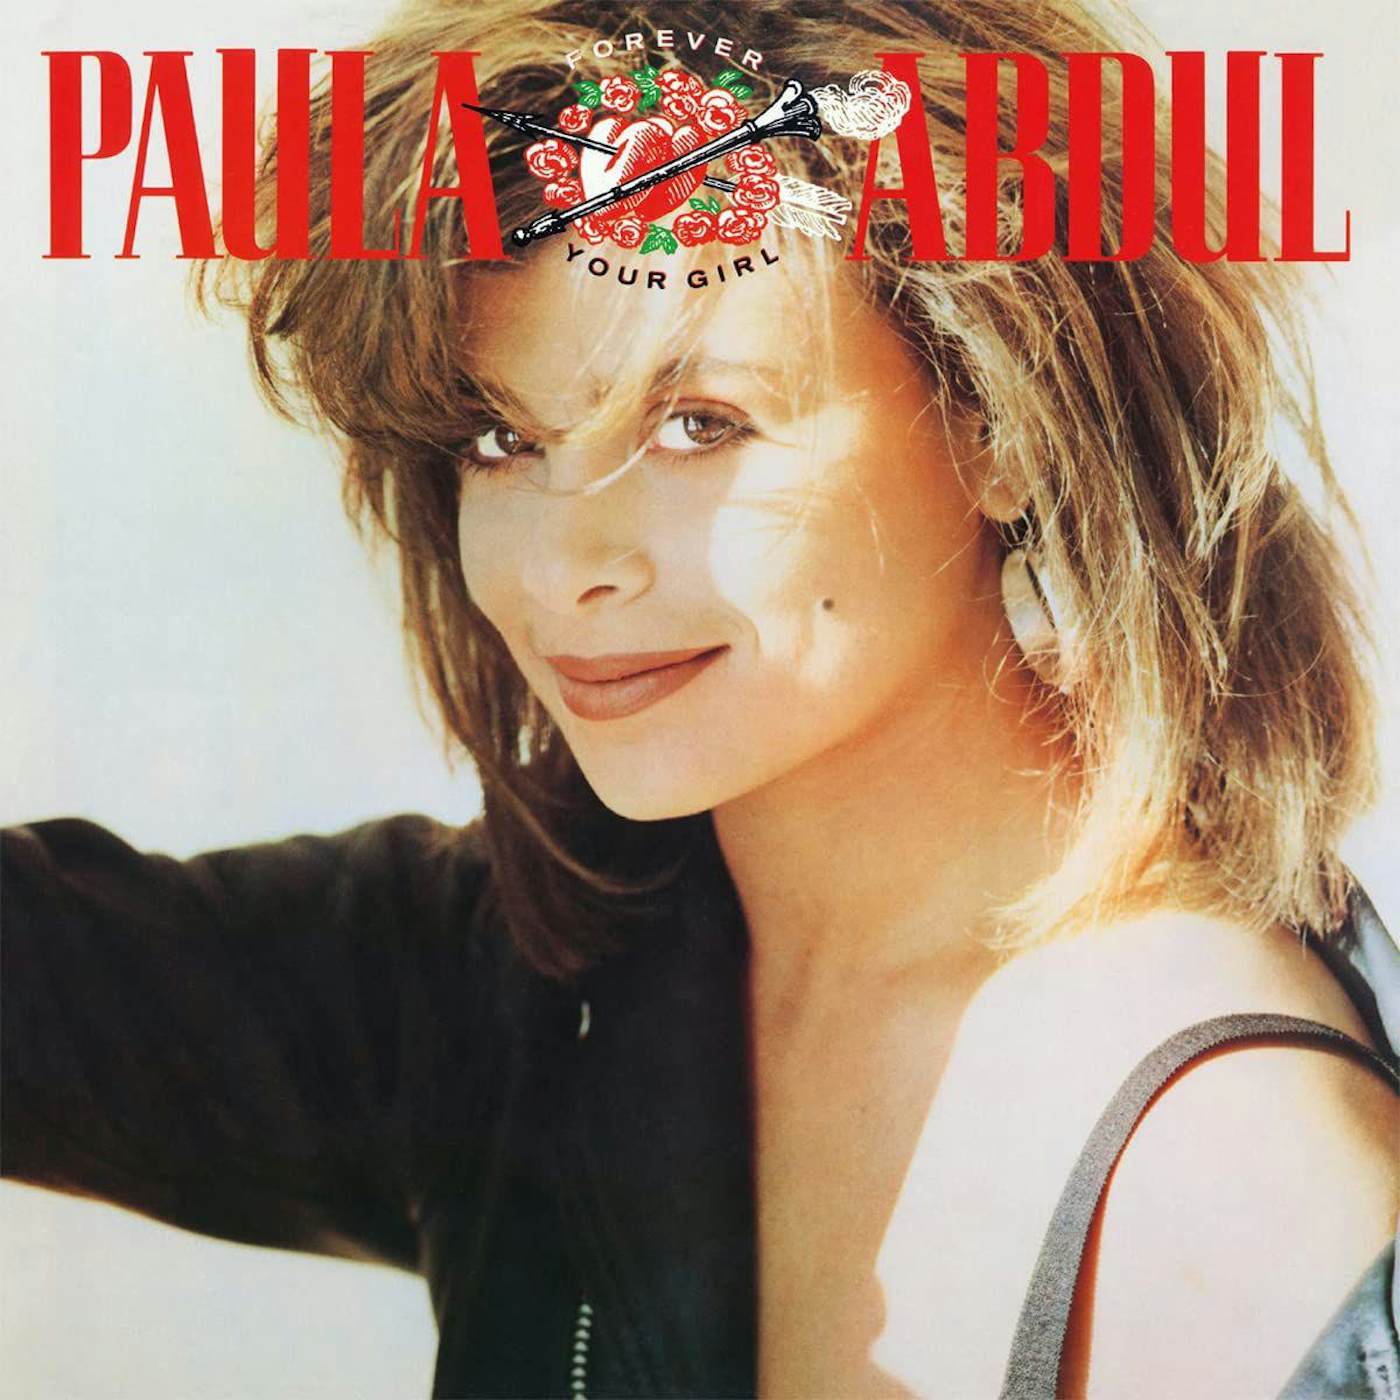 Paula Abdul Forever Your Girl Vinyl Record